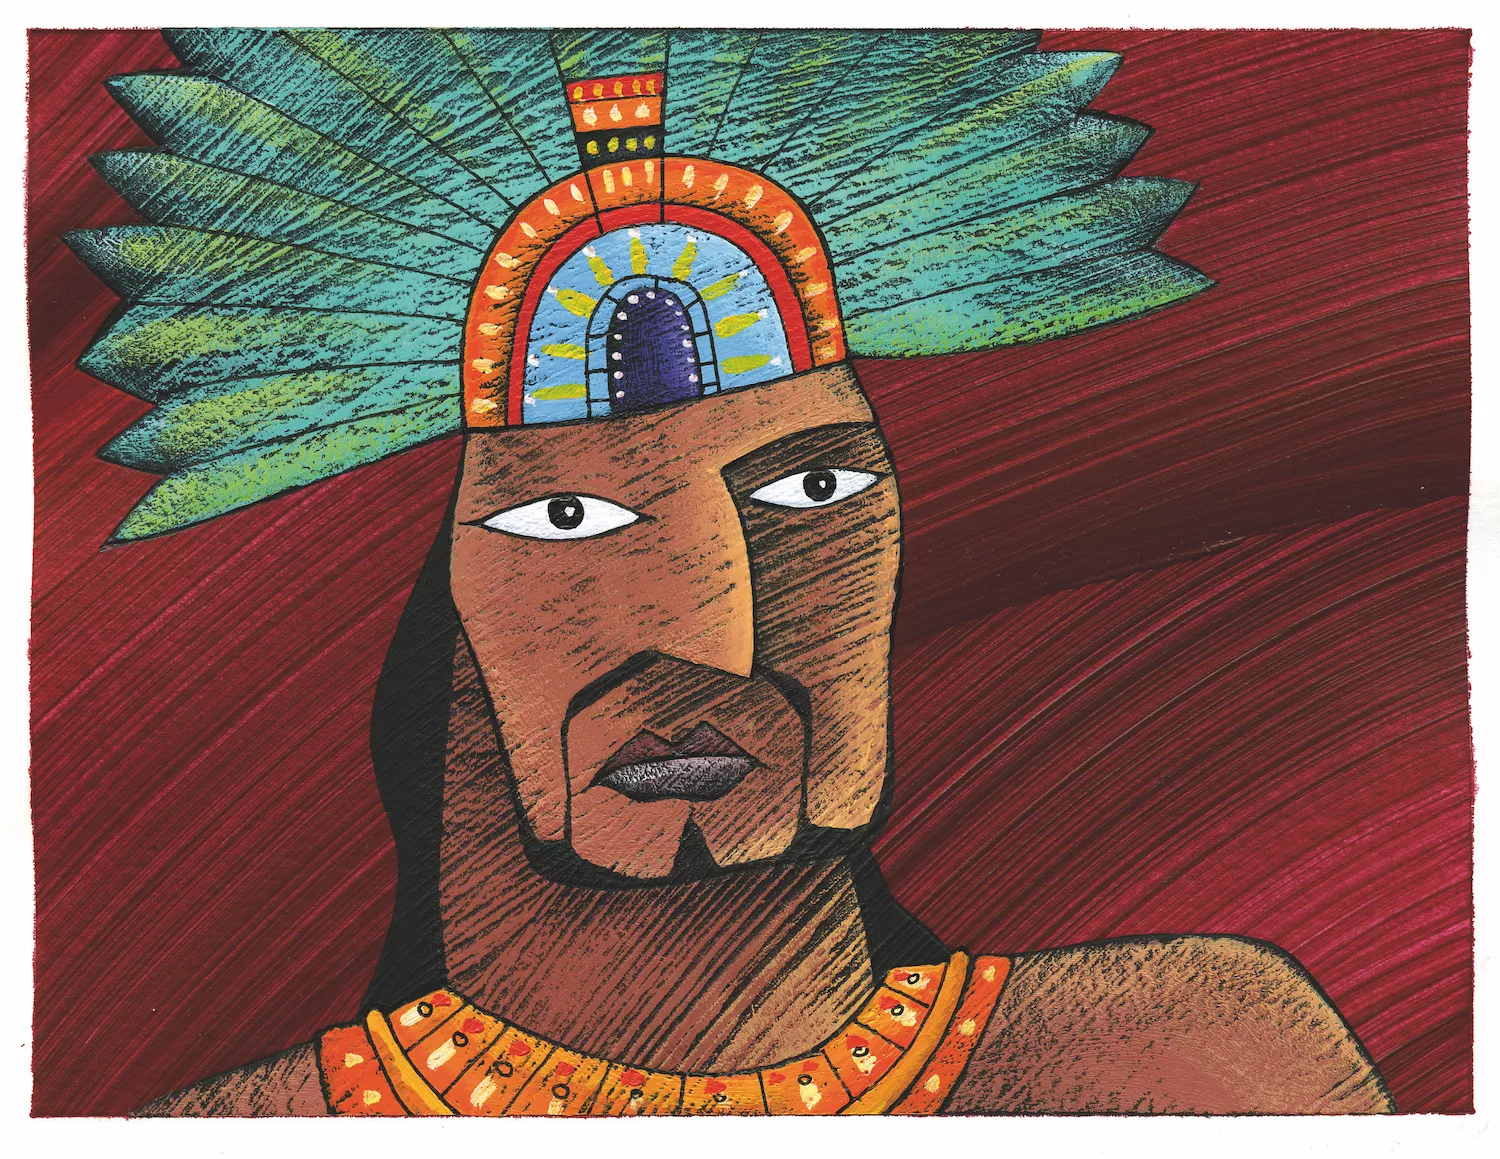 El novembre del 1519 Moctezuma va rebre Cortés com una divinitat però fou detingut. Sis mesos després va morir en una confosa revolta